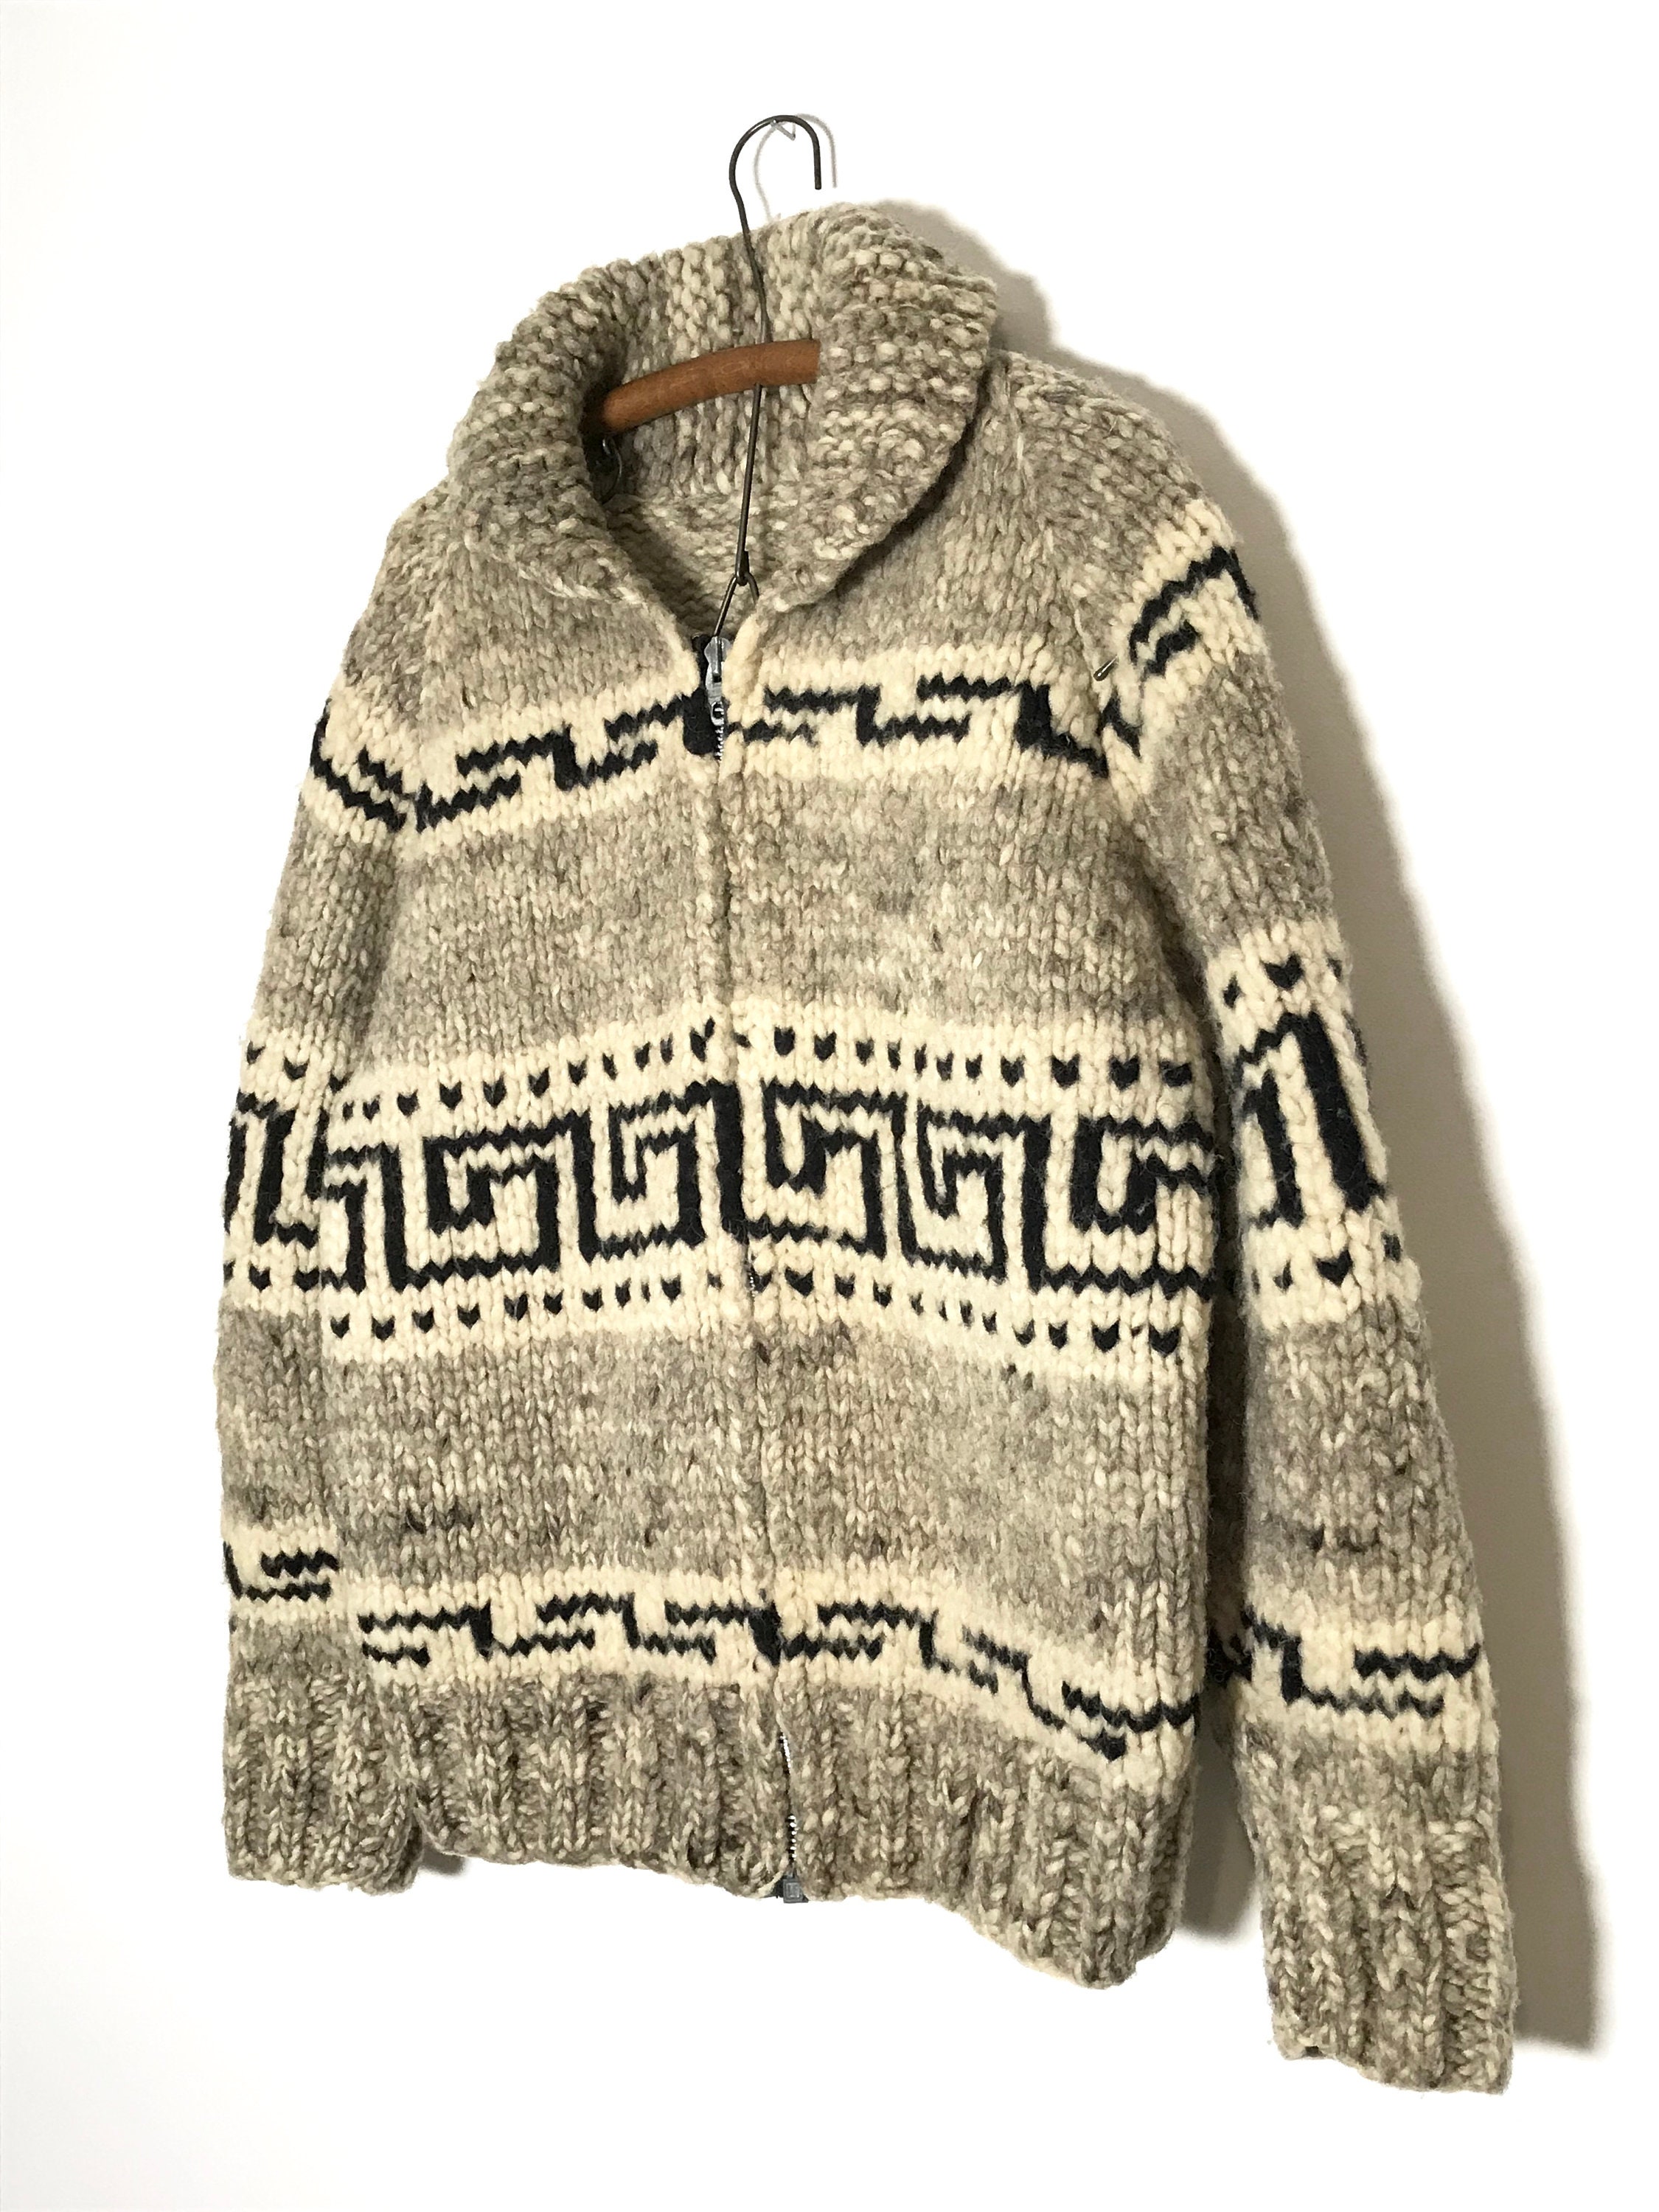 Vintage cowichan sweater cowichan sweater men cowichan | Etsy